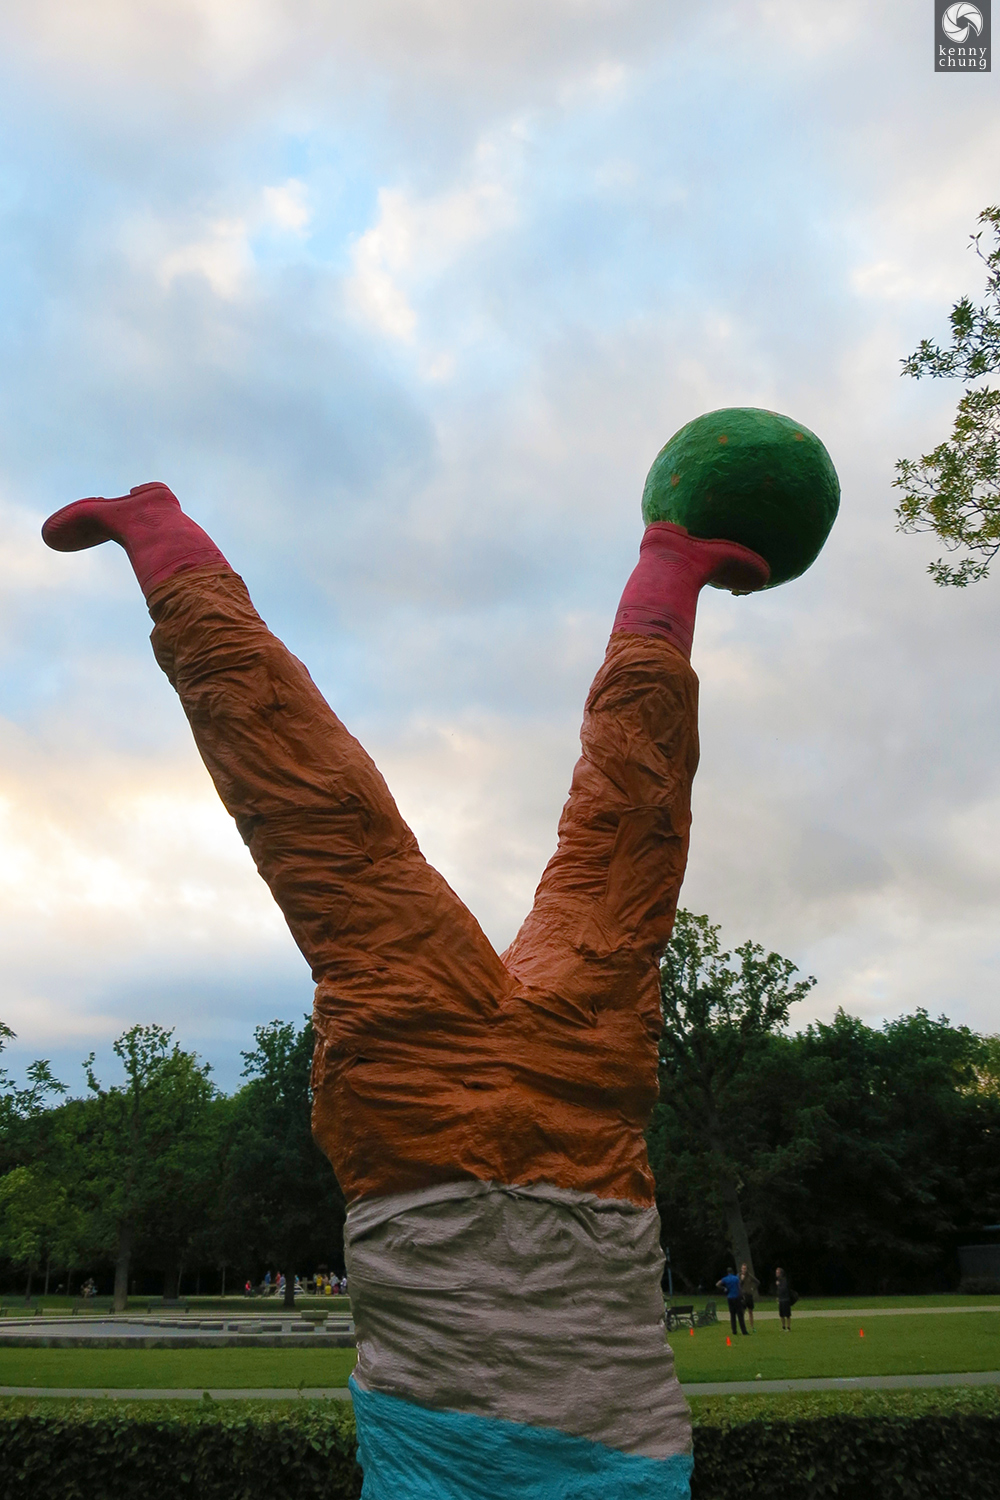 Closeup of the boy kicking a ball art sculpture in Vondelpark.